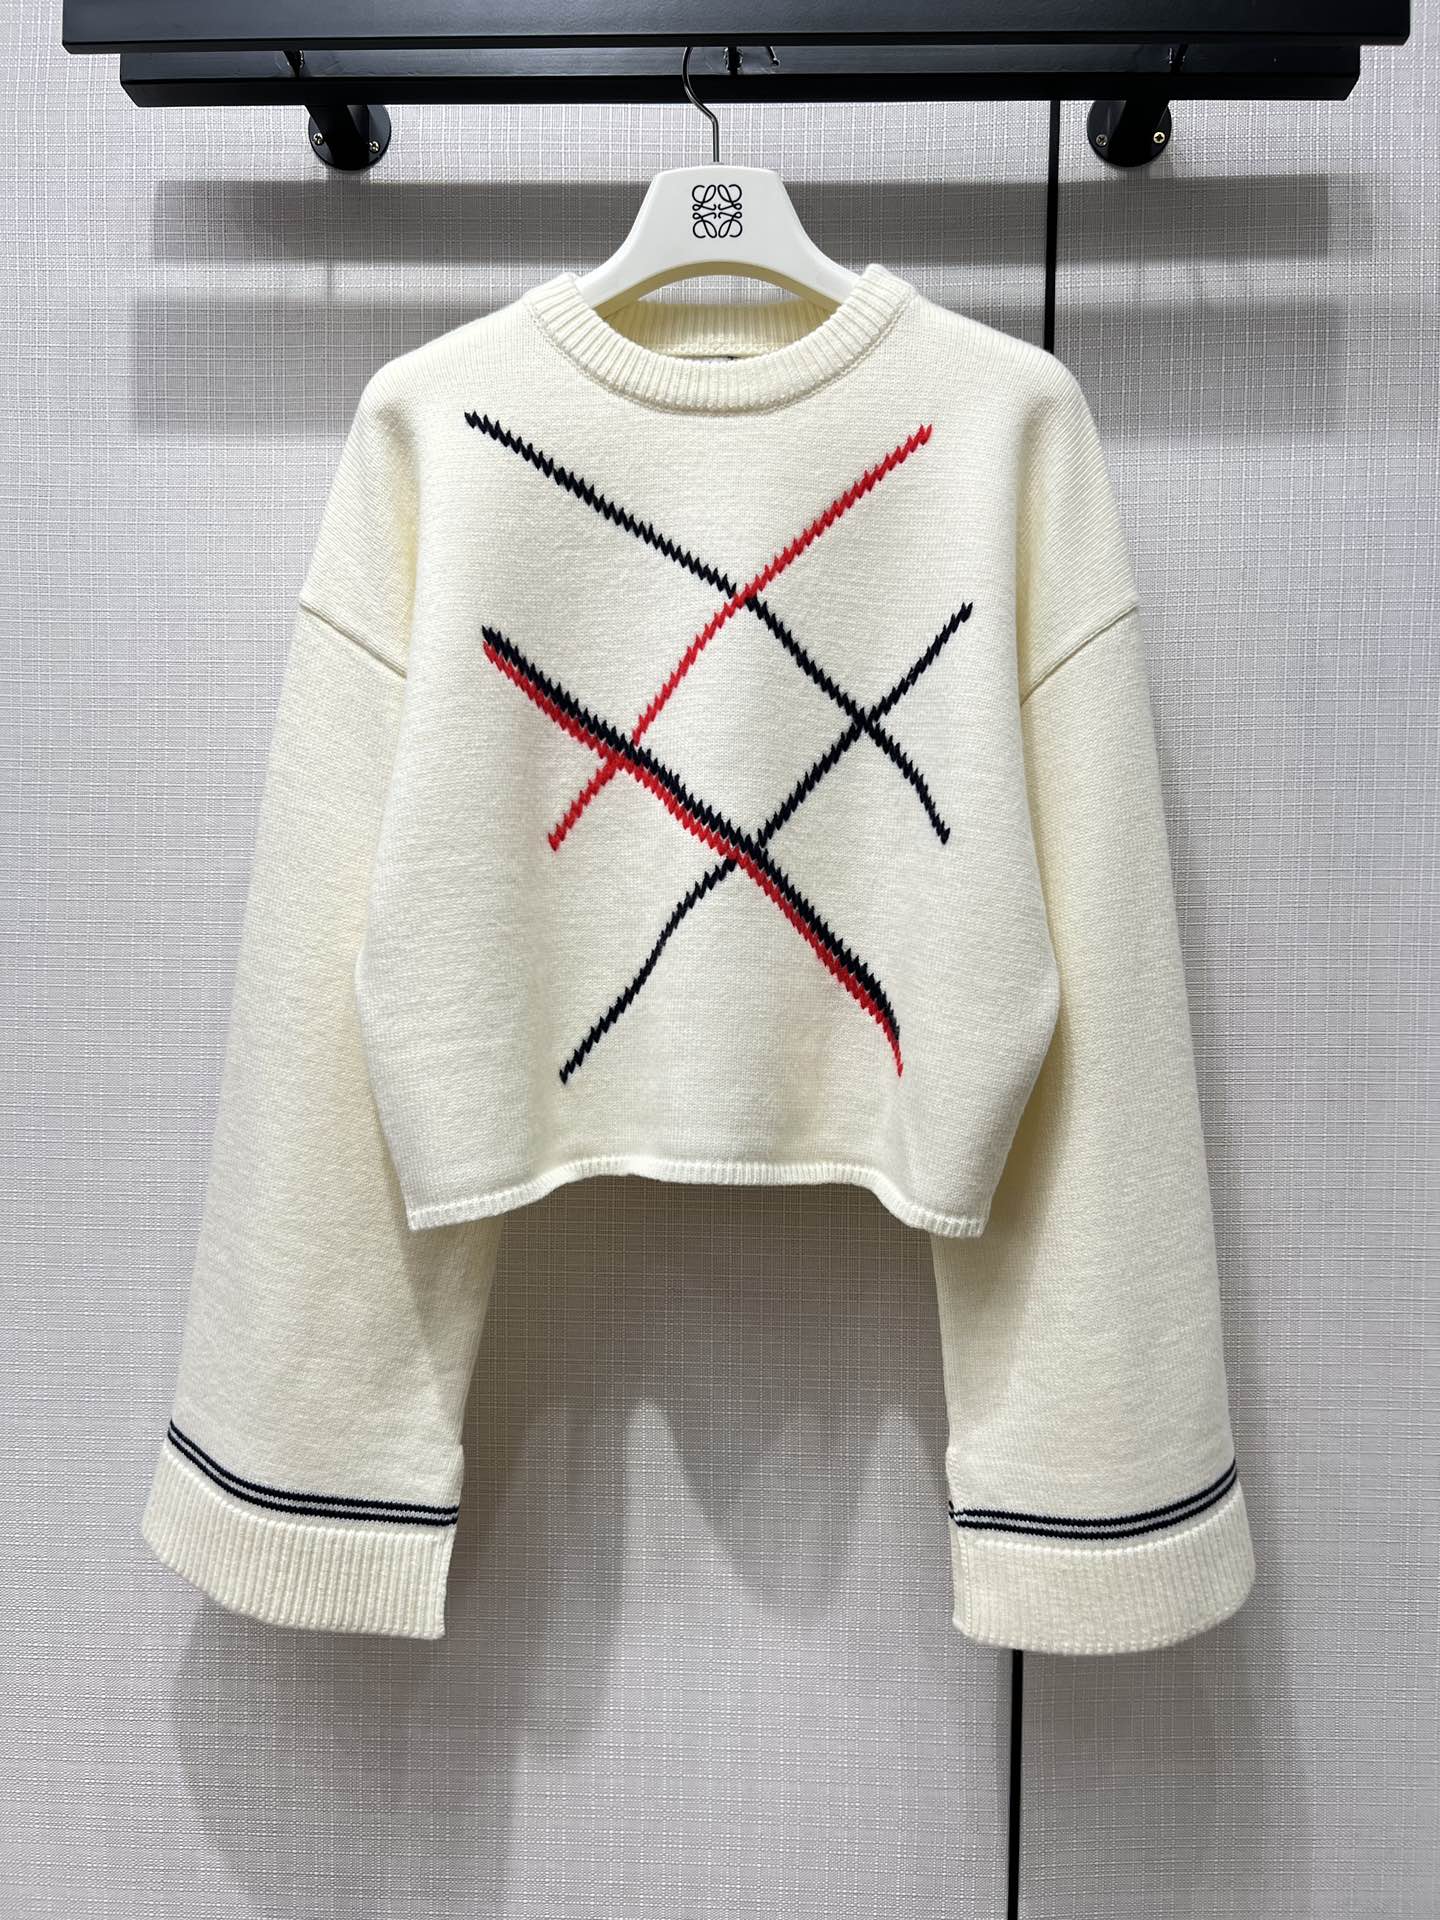 ロエベ セーター コピー 人気 ファッション クロップド アーガイルセーター 